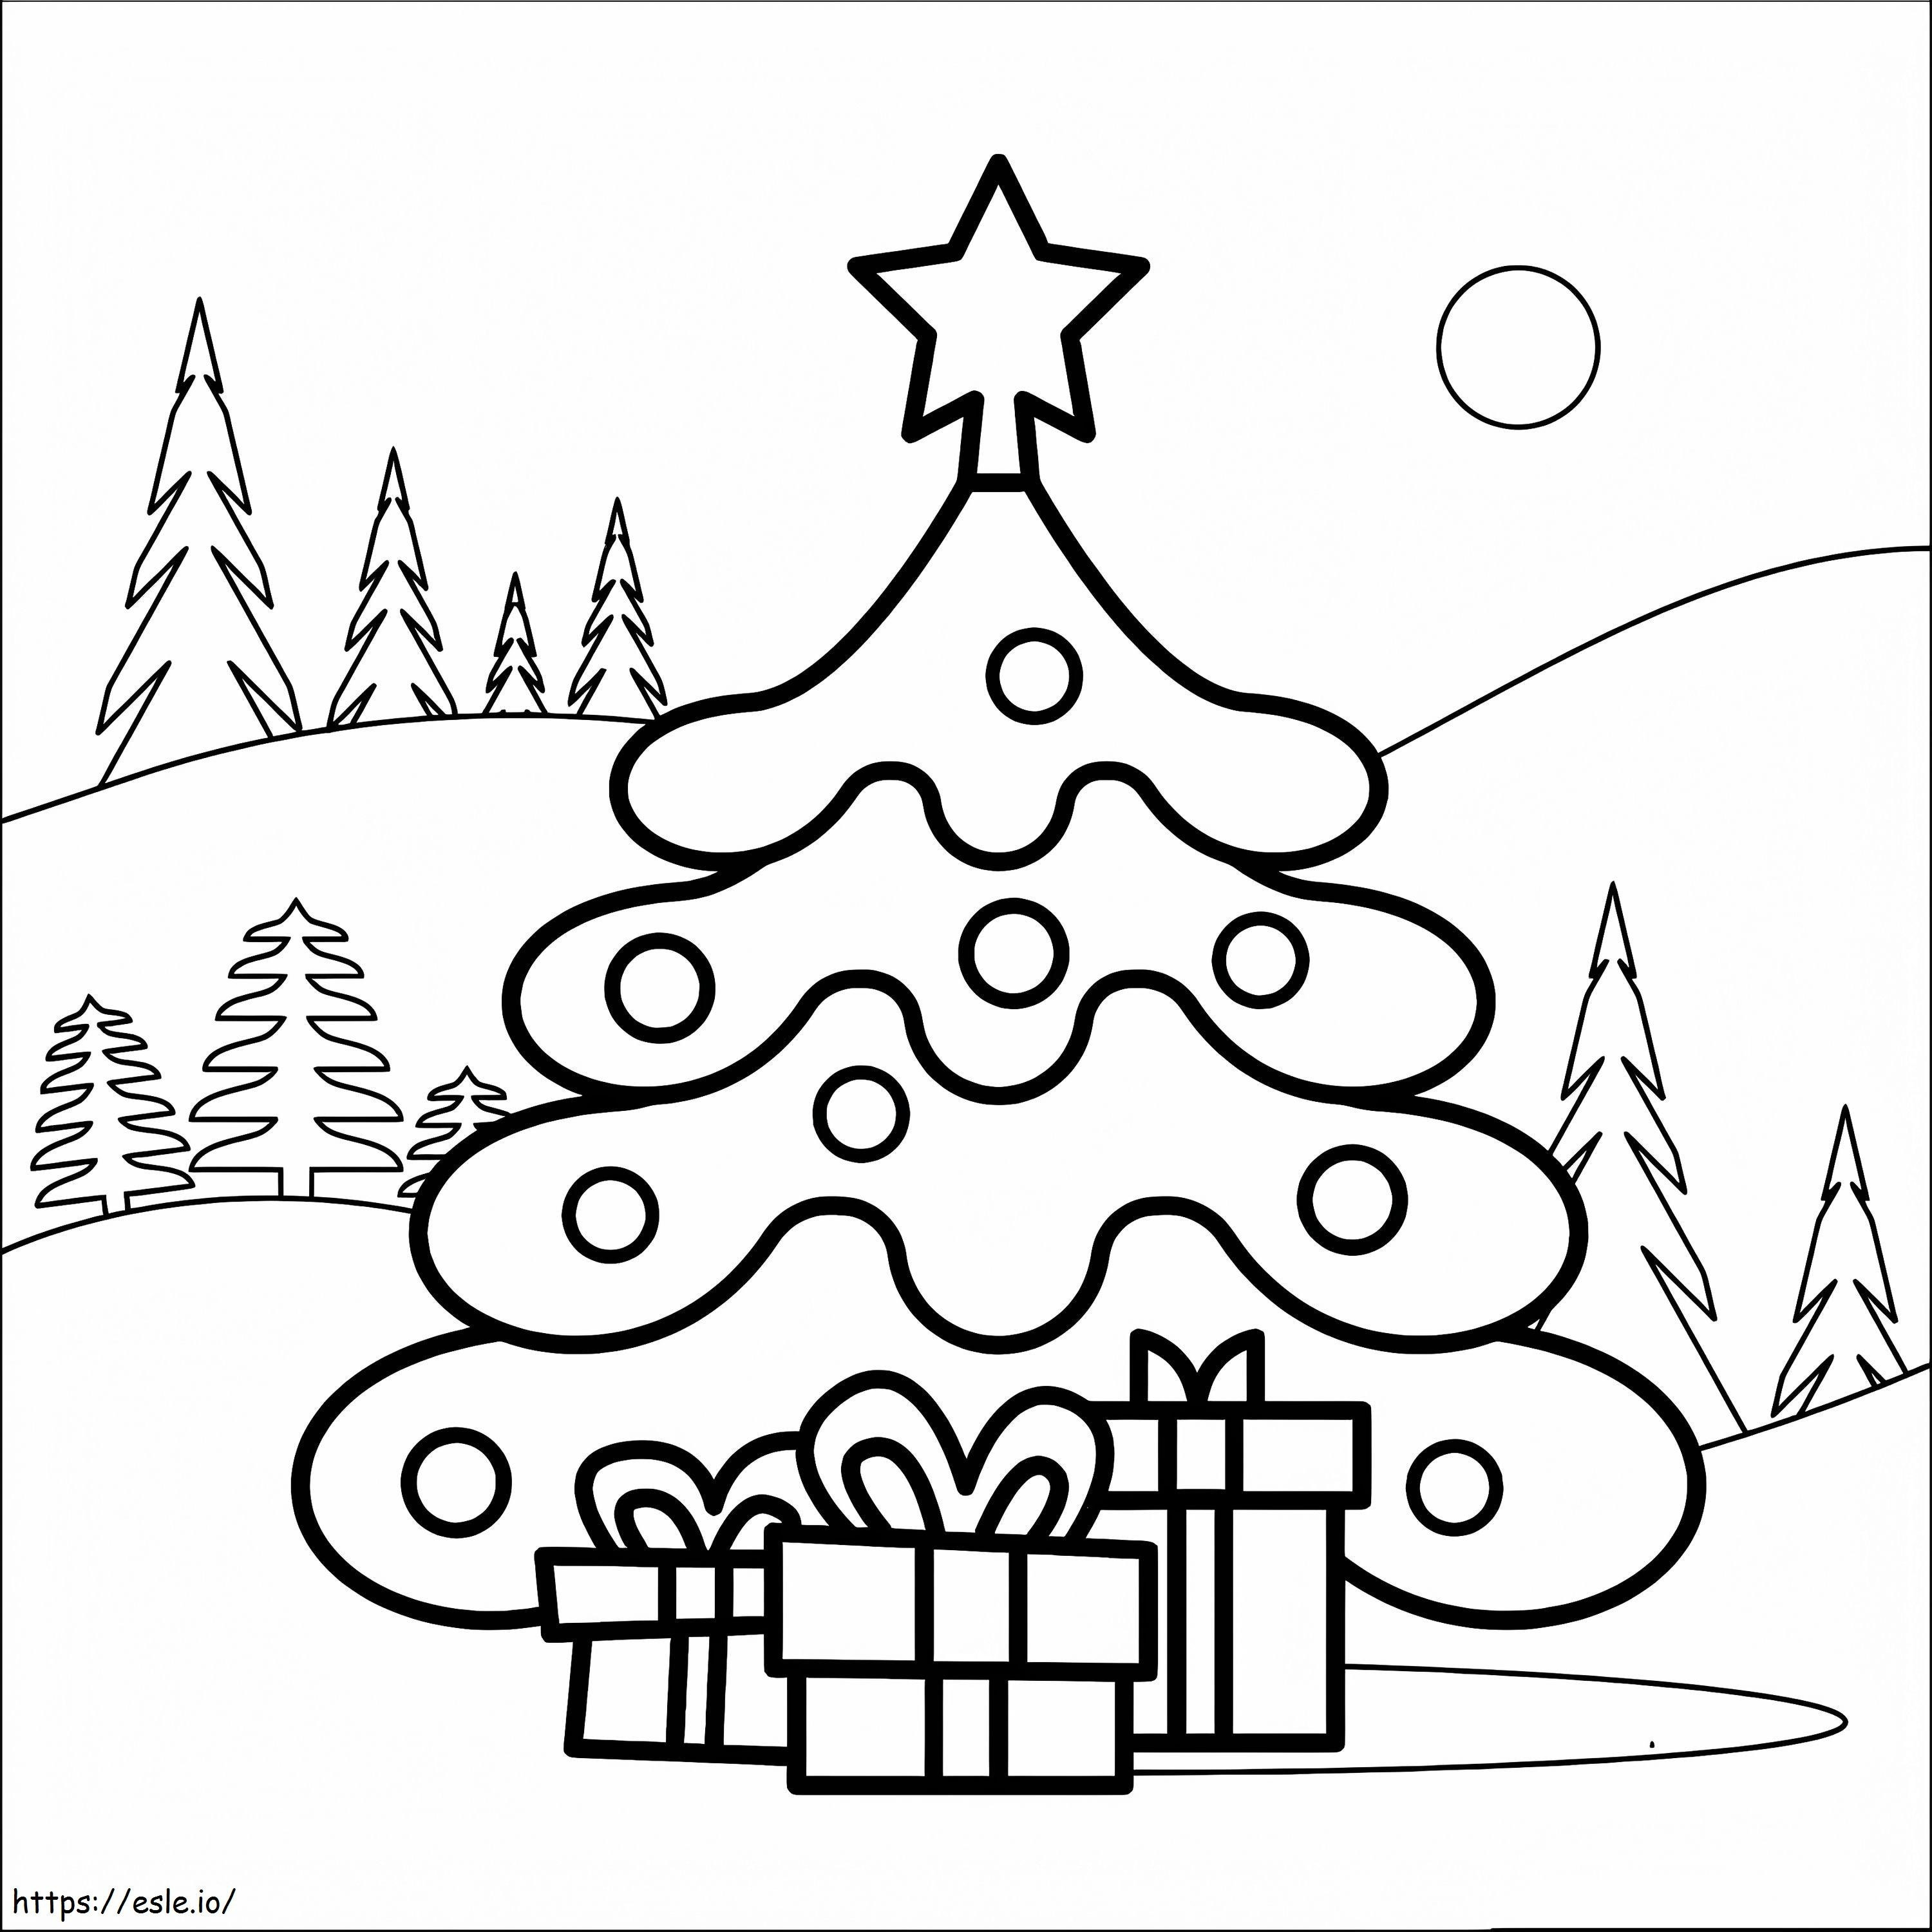 Árbol De Navidad Y Regalos 3 para colorear